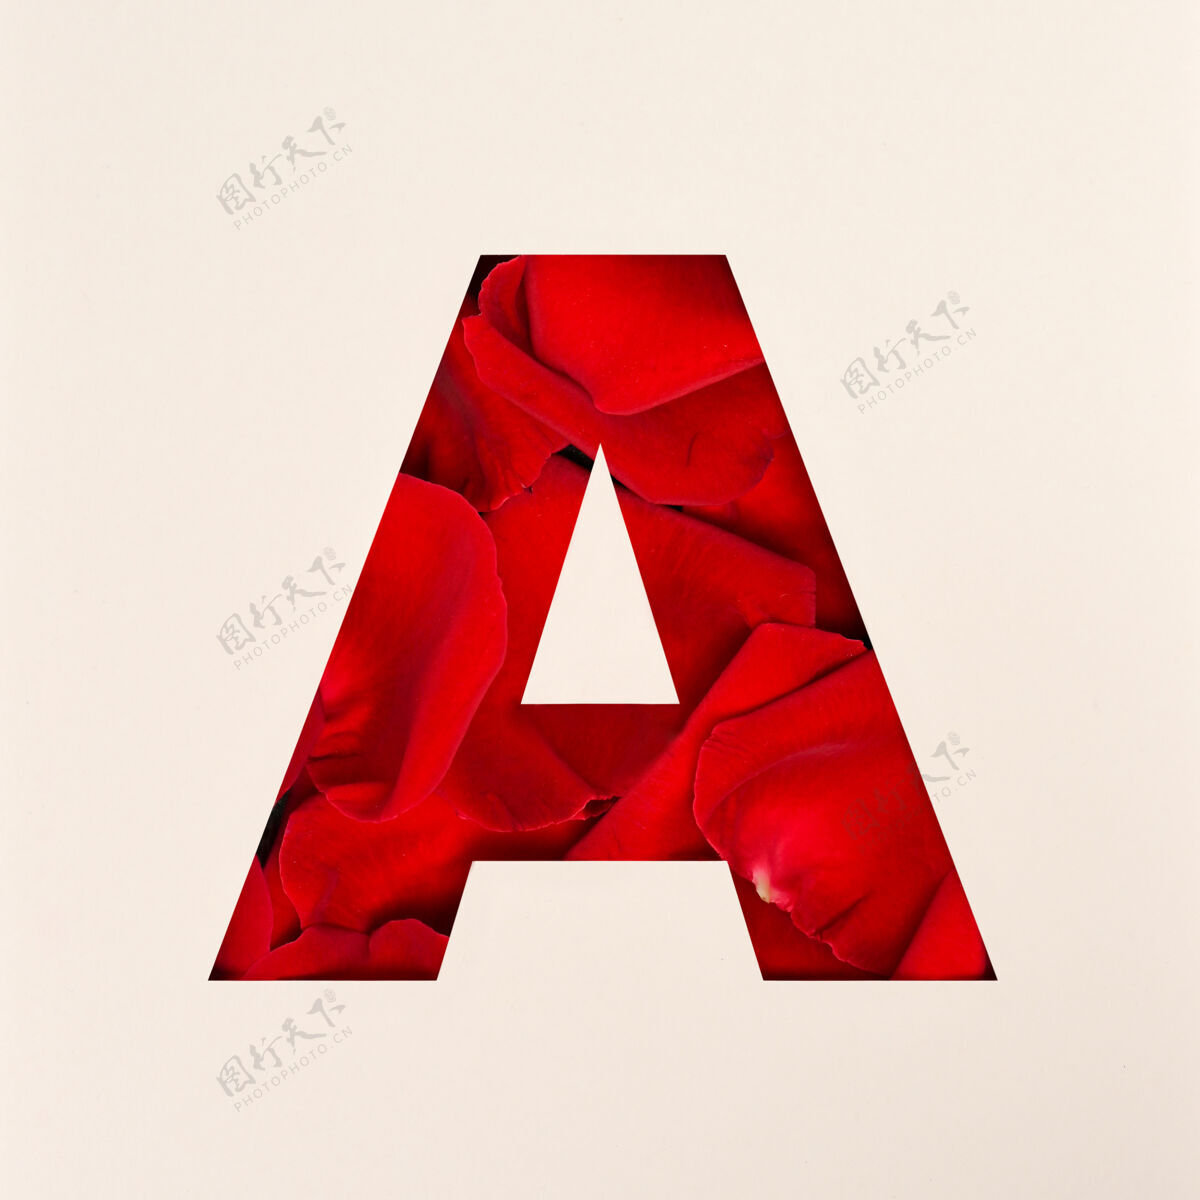 字母表字体设计 抽象的玫瑰花瓣字母字体 逼真的花卉排版-a花字母玫瑰